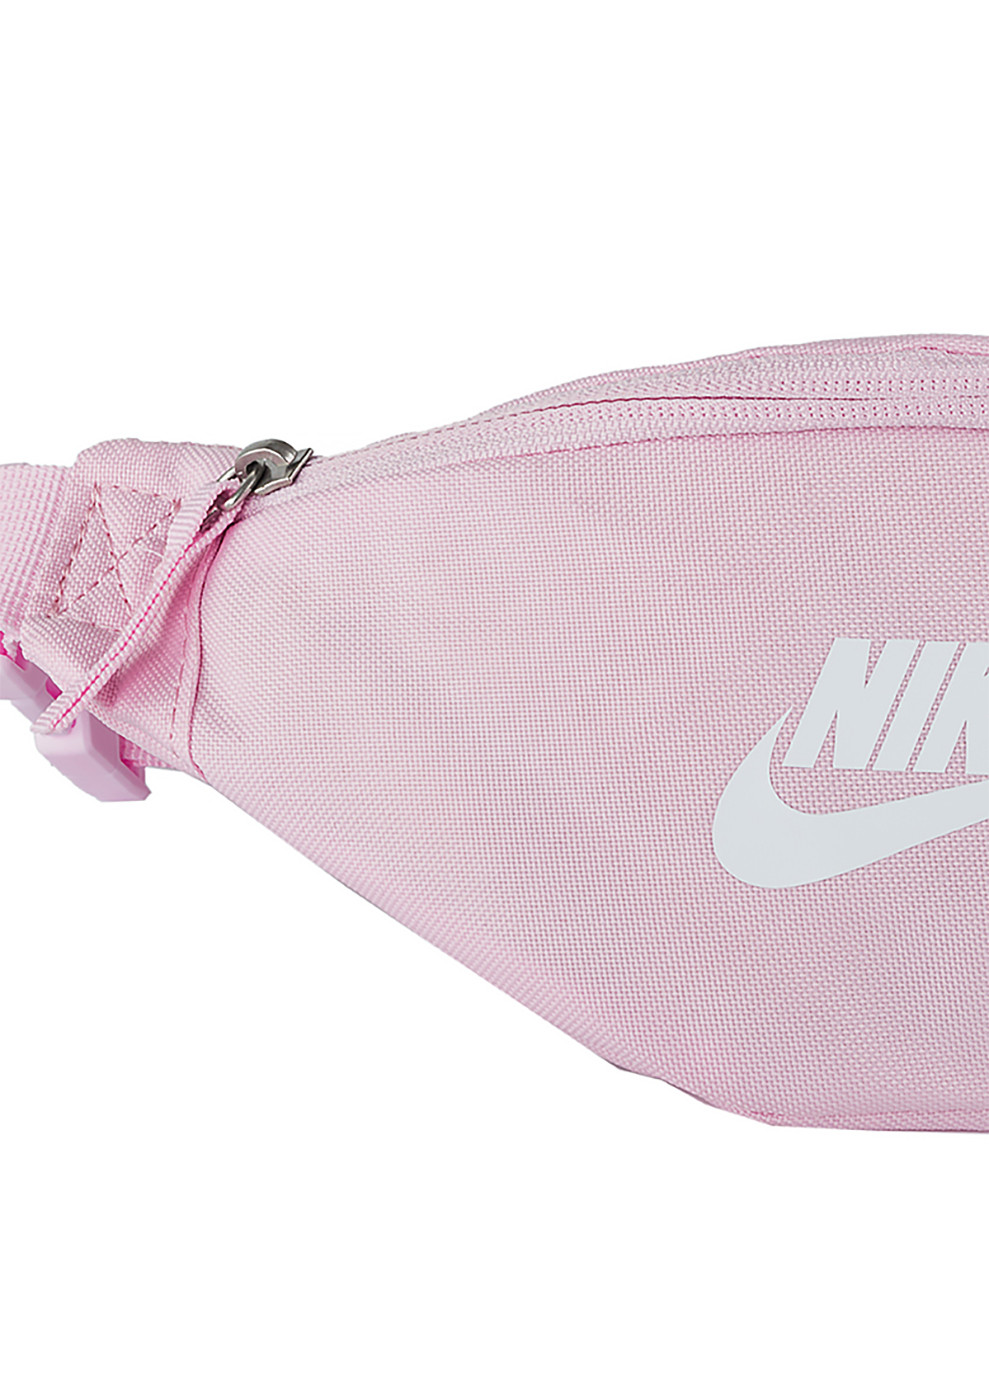 Сумка NK HERITAGE S WAISTPACK Розовый MISC (DB0488-663) Nike (258145766)